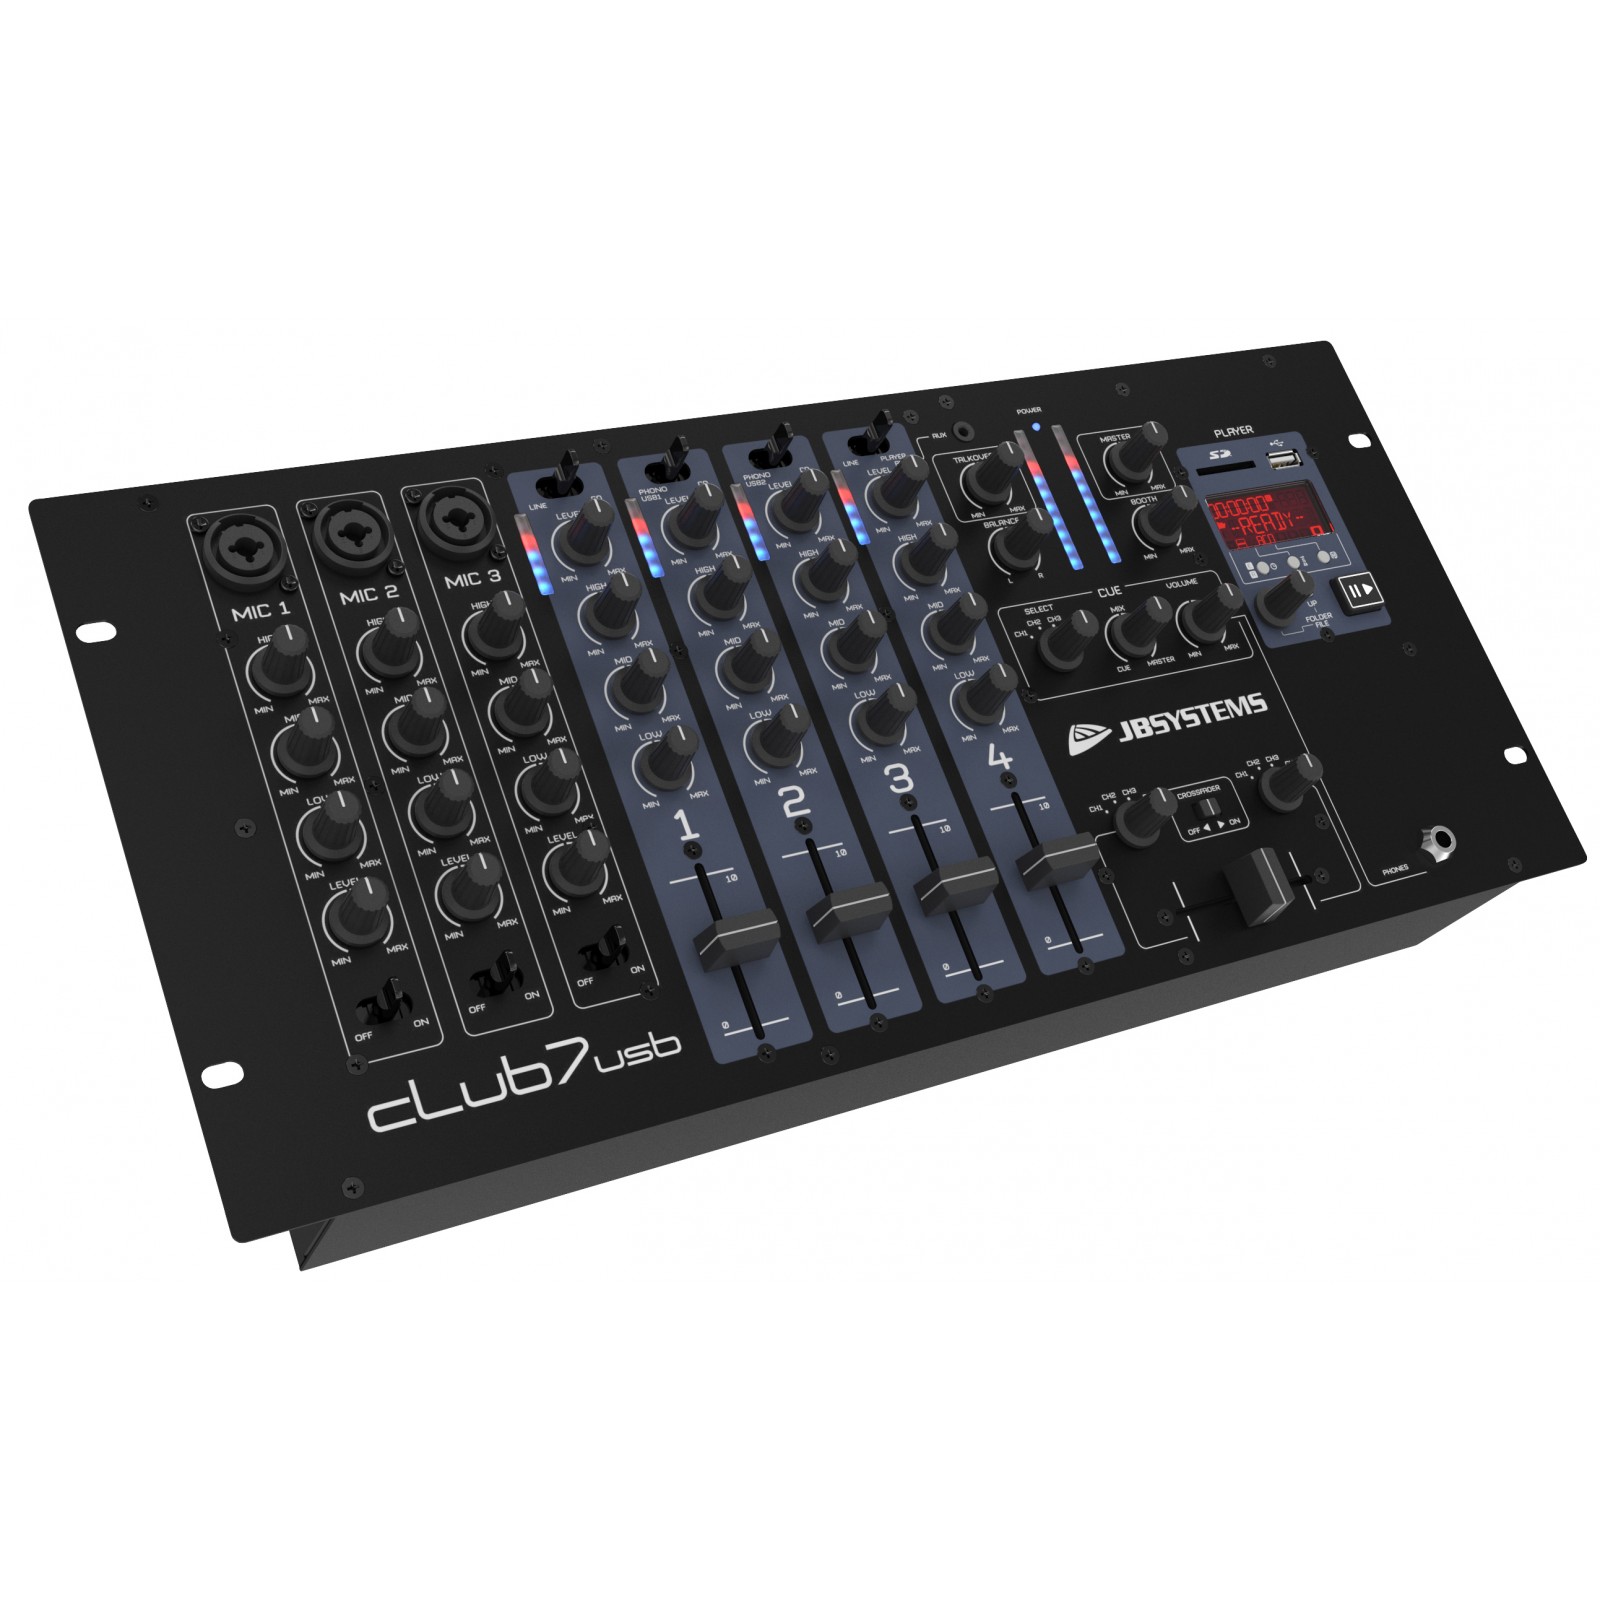 JB Systems - CLUB7-USB - Tables de mixage DJ